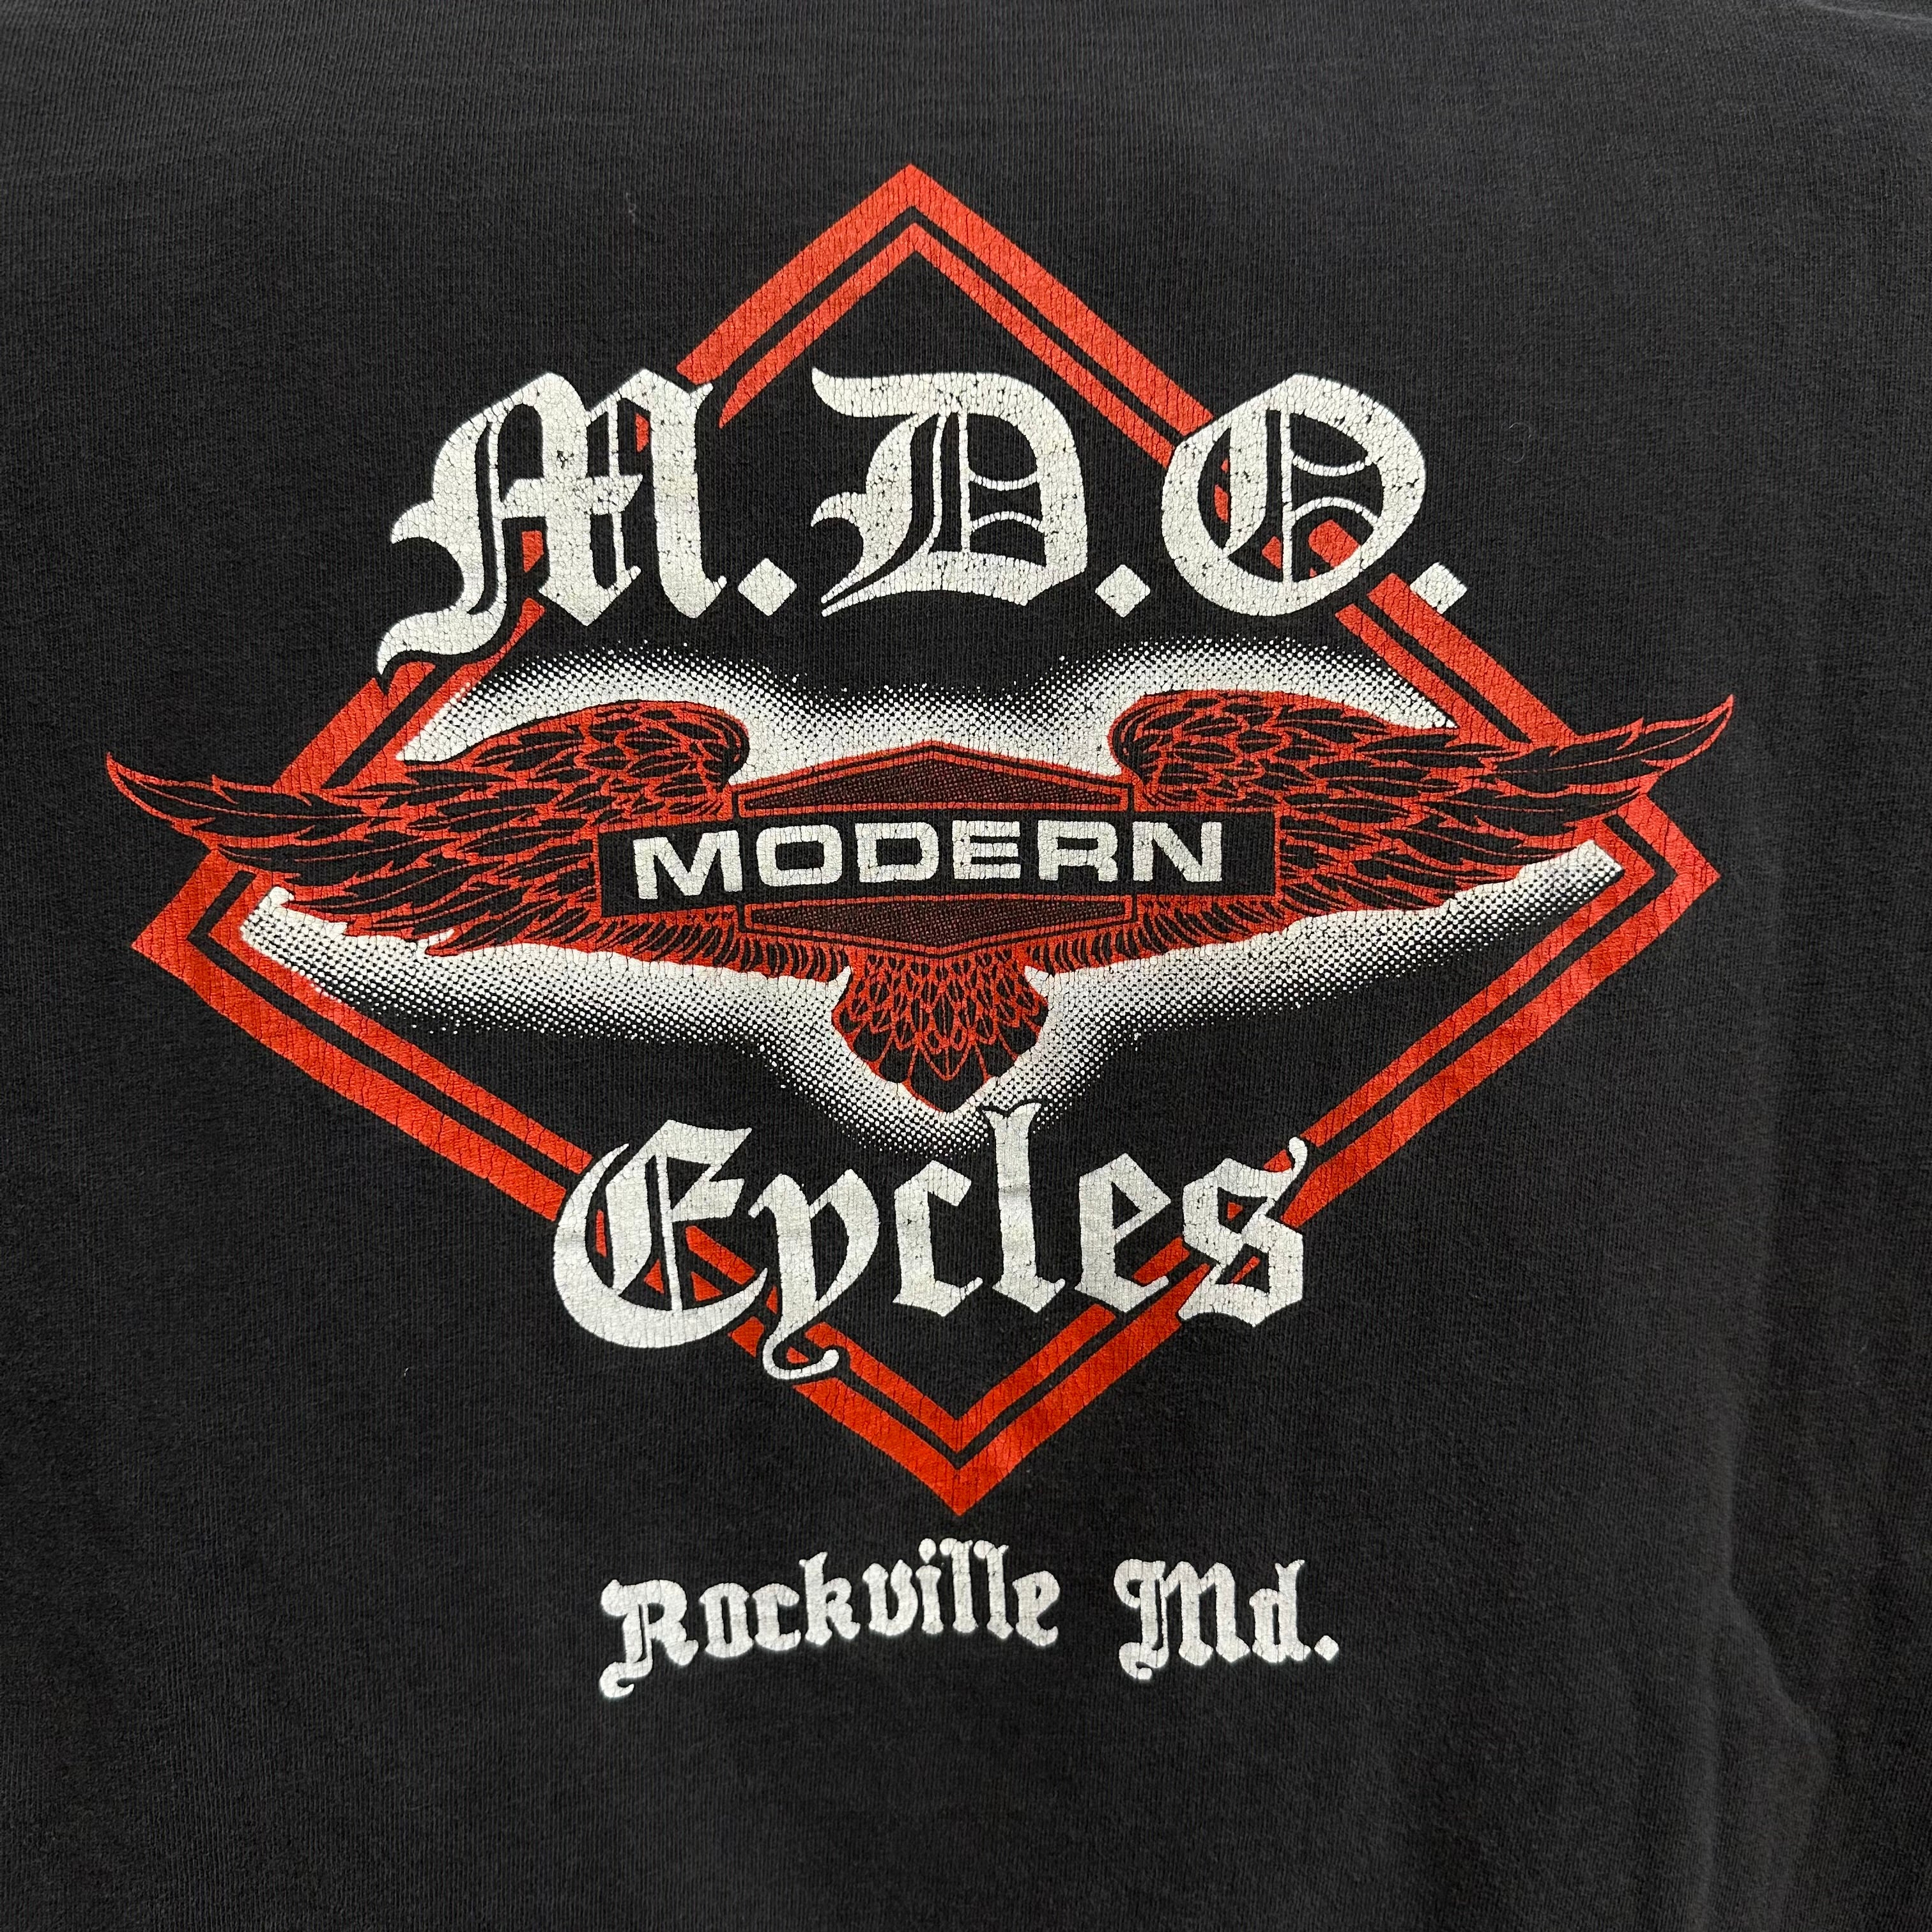 Harley Davidson “I Own a Harley” Rockville, MD T-Shirt